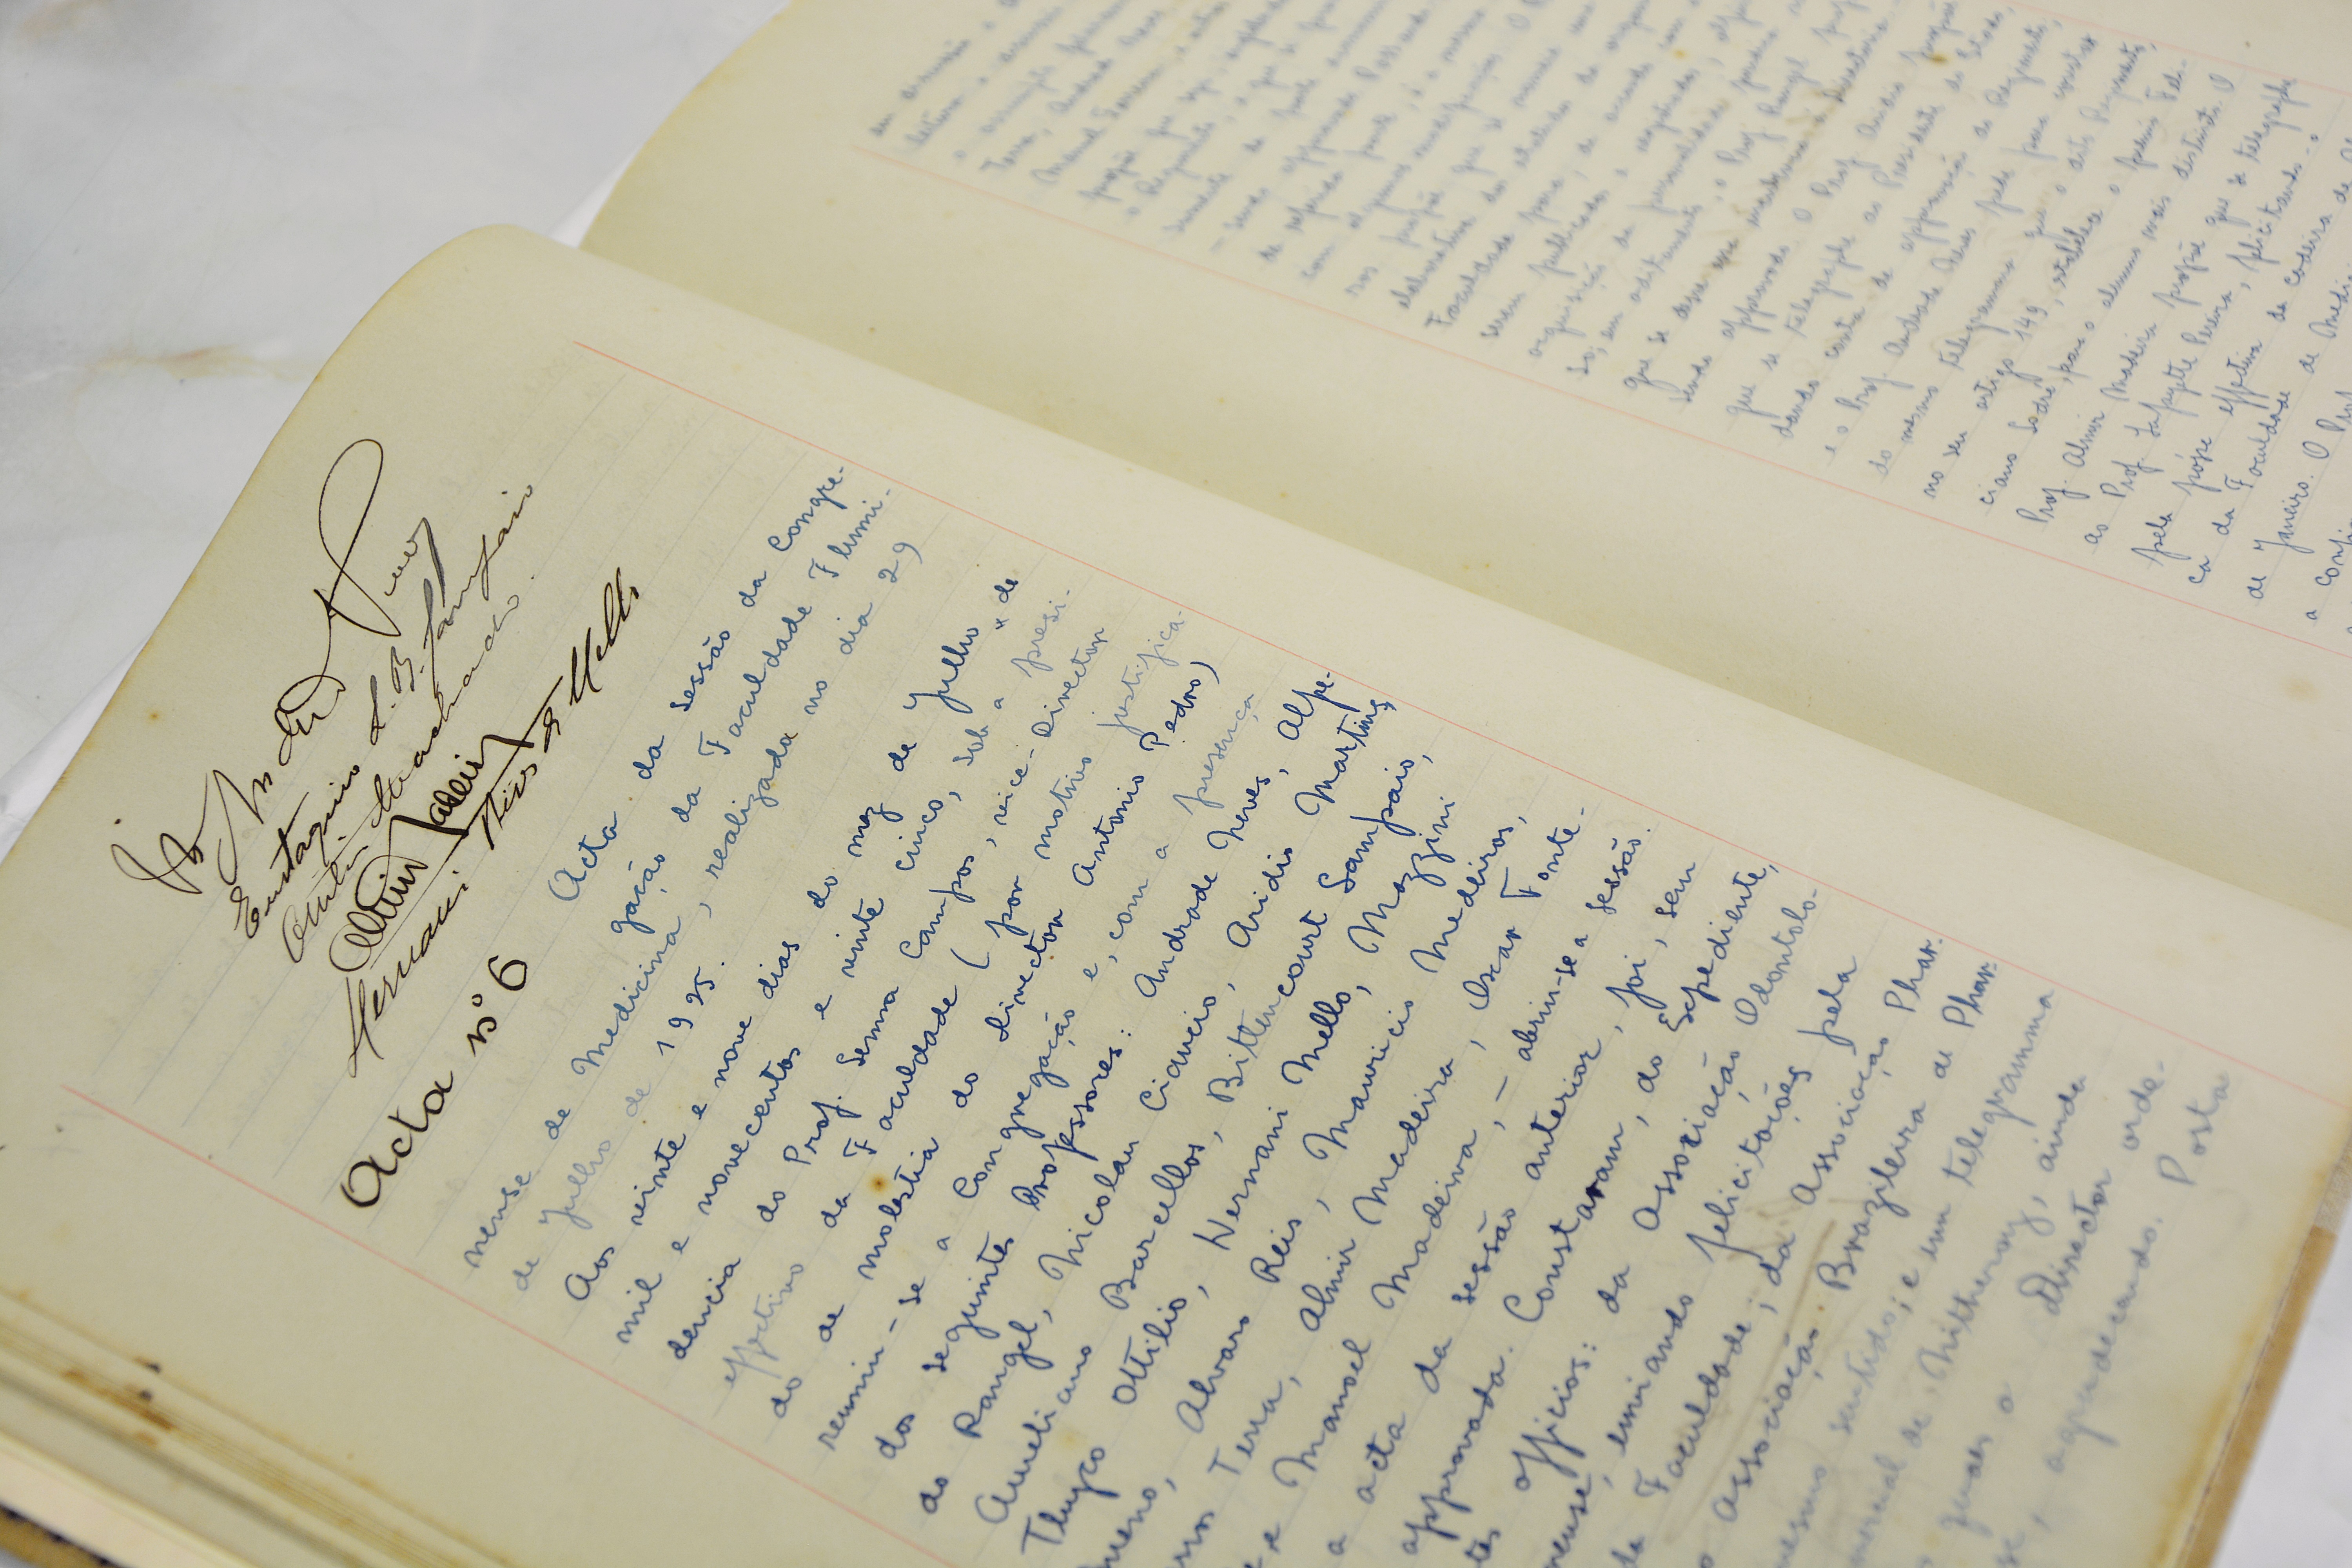 Detalhe da ata manuscrita da sessão da Congregação da Faculdade Fluminense de Medicina, ano 1925.